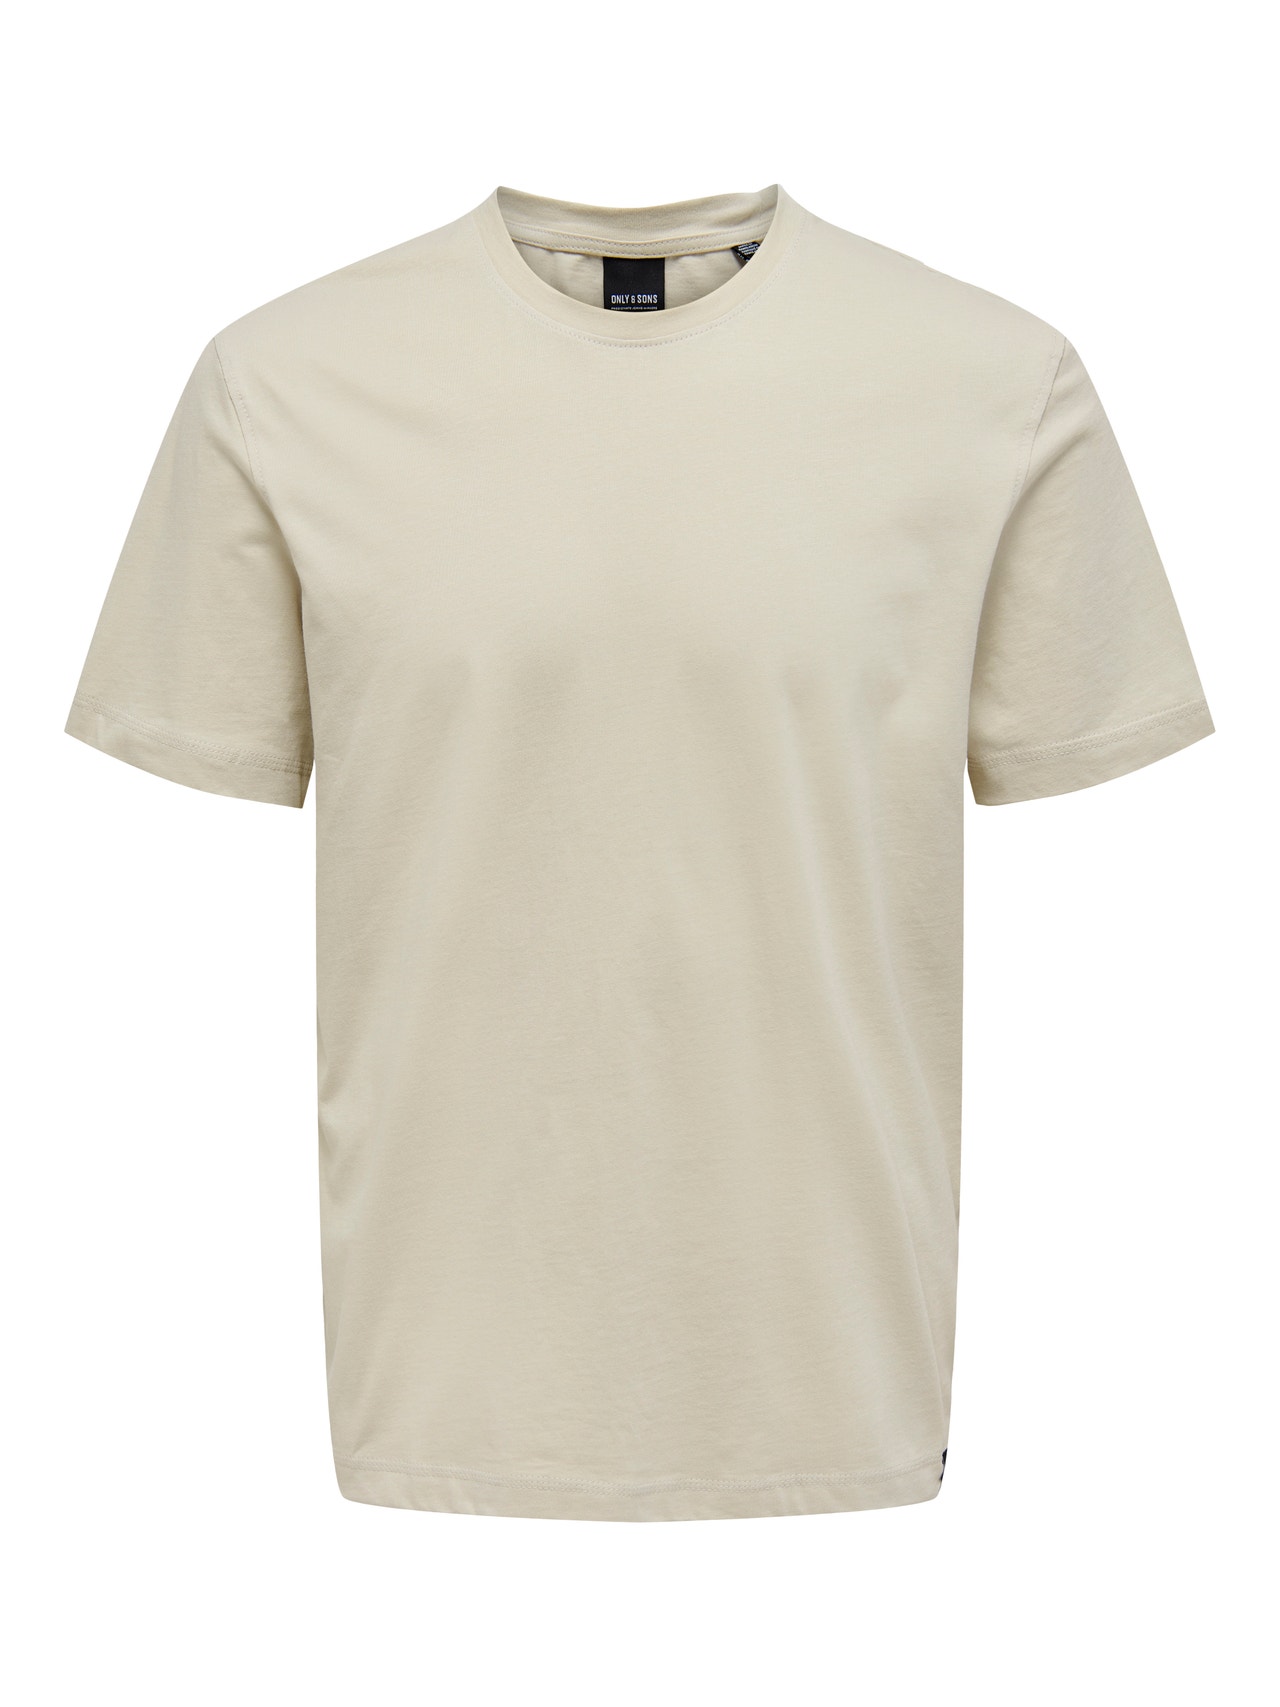 ONLY & SONS Camisetas Corte regular Cuello redondo -Pelican - 22025208